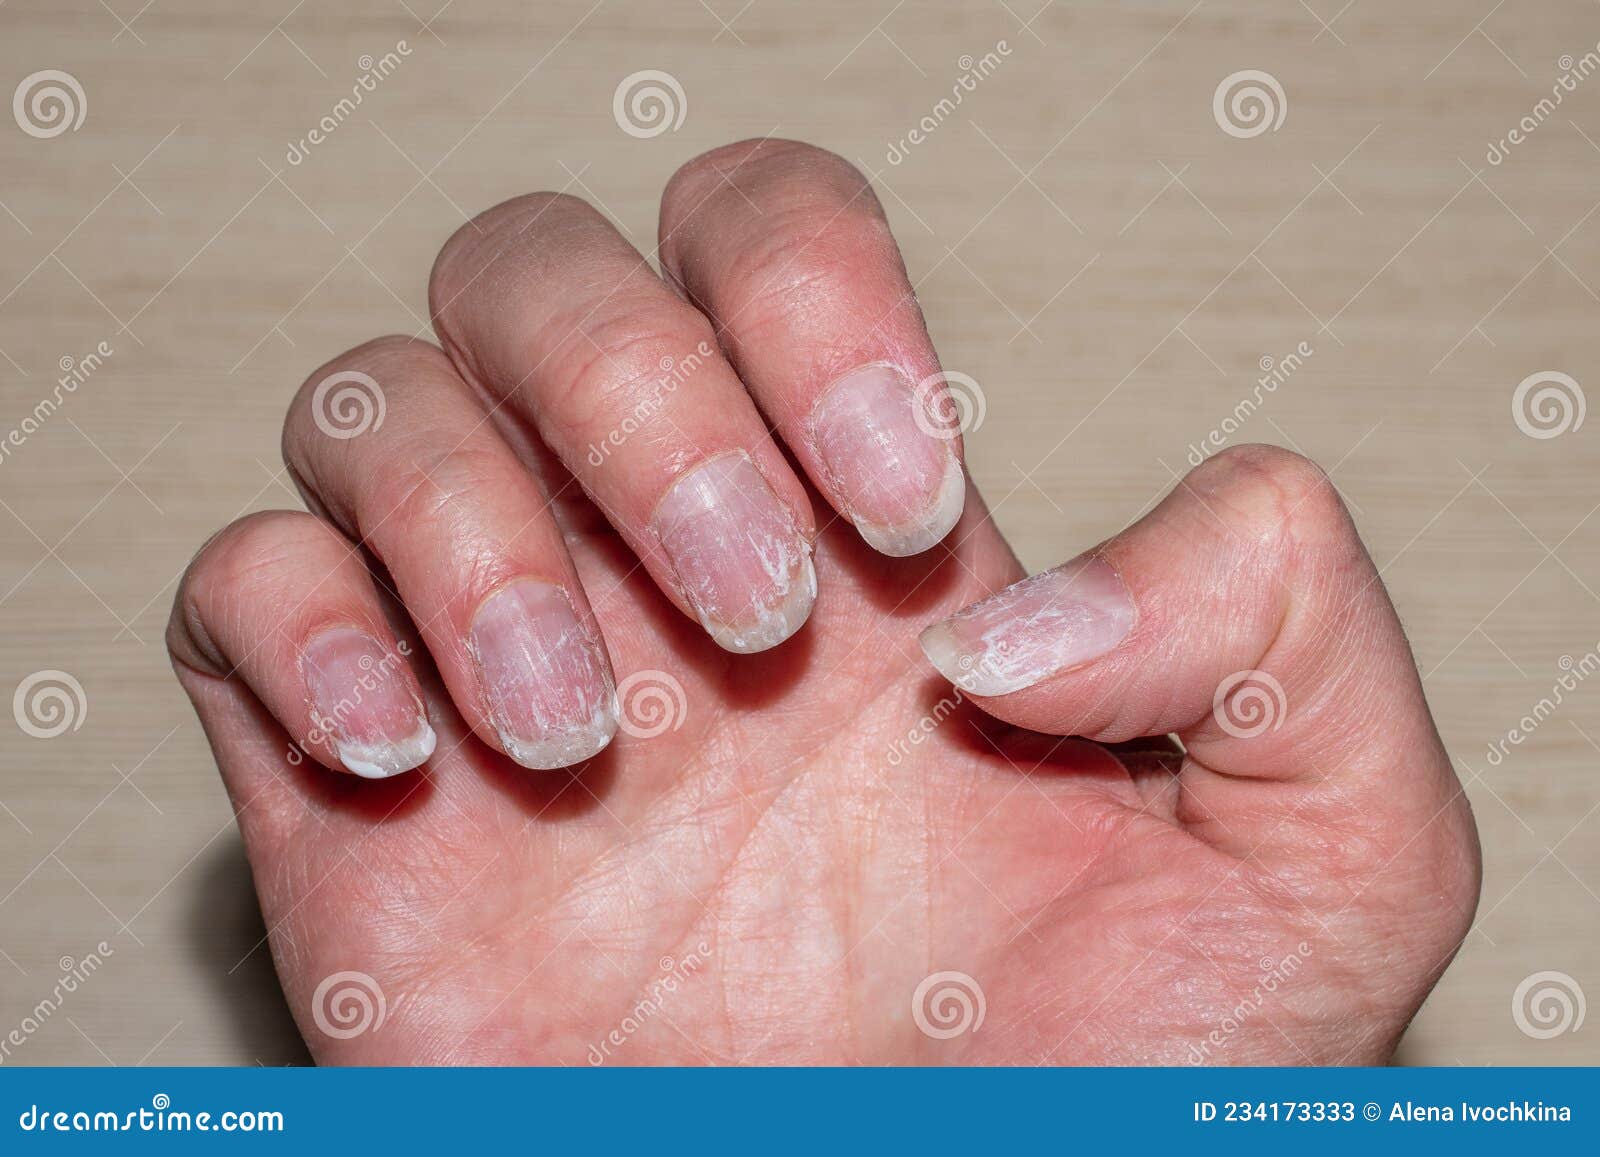 My long natural bare nails with no nail polish! - YouTube